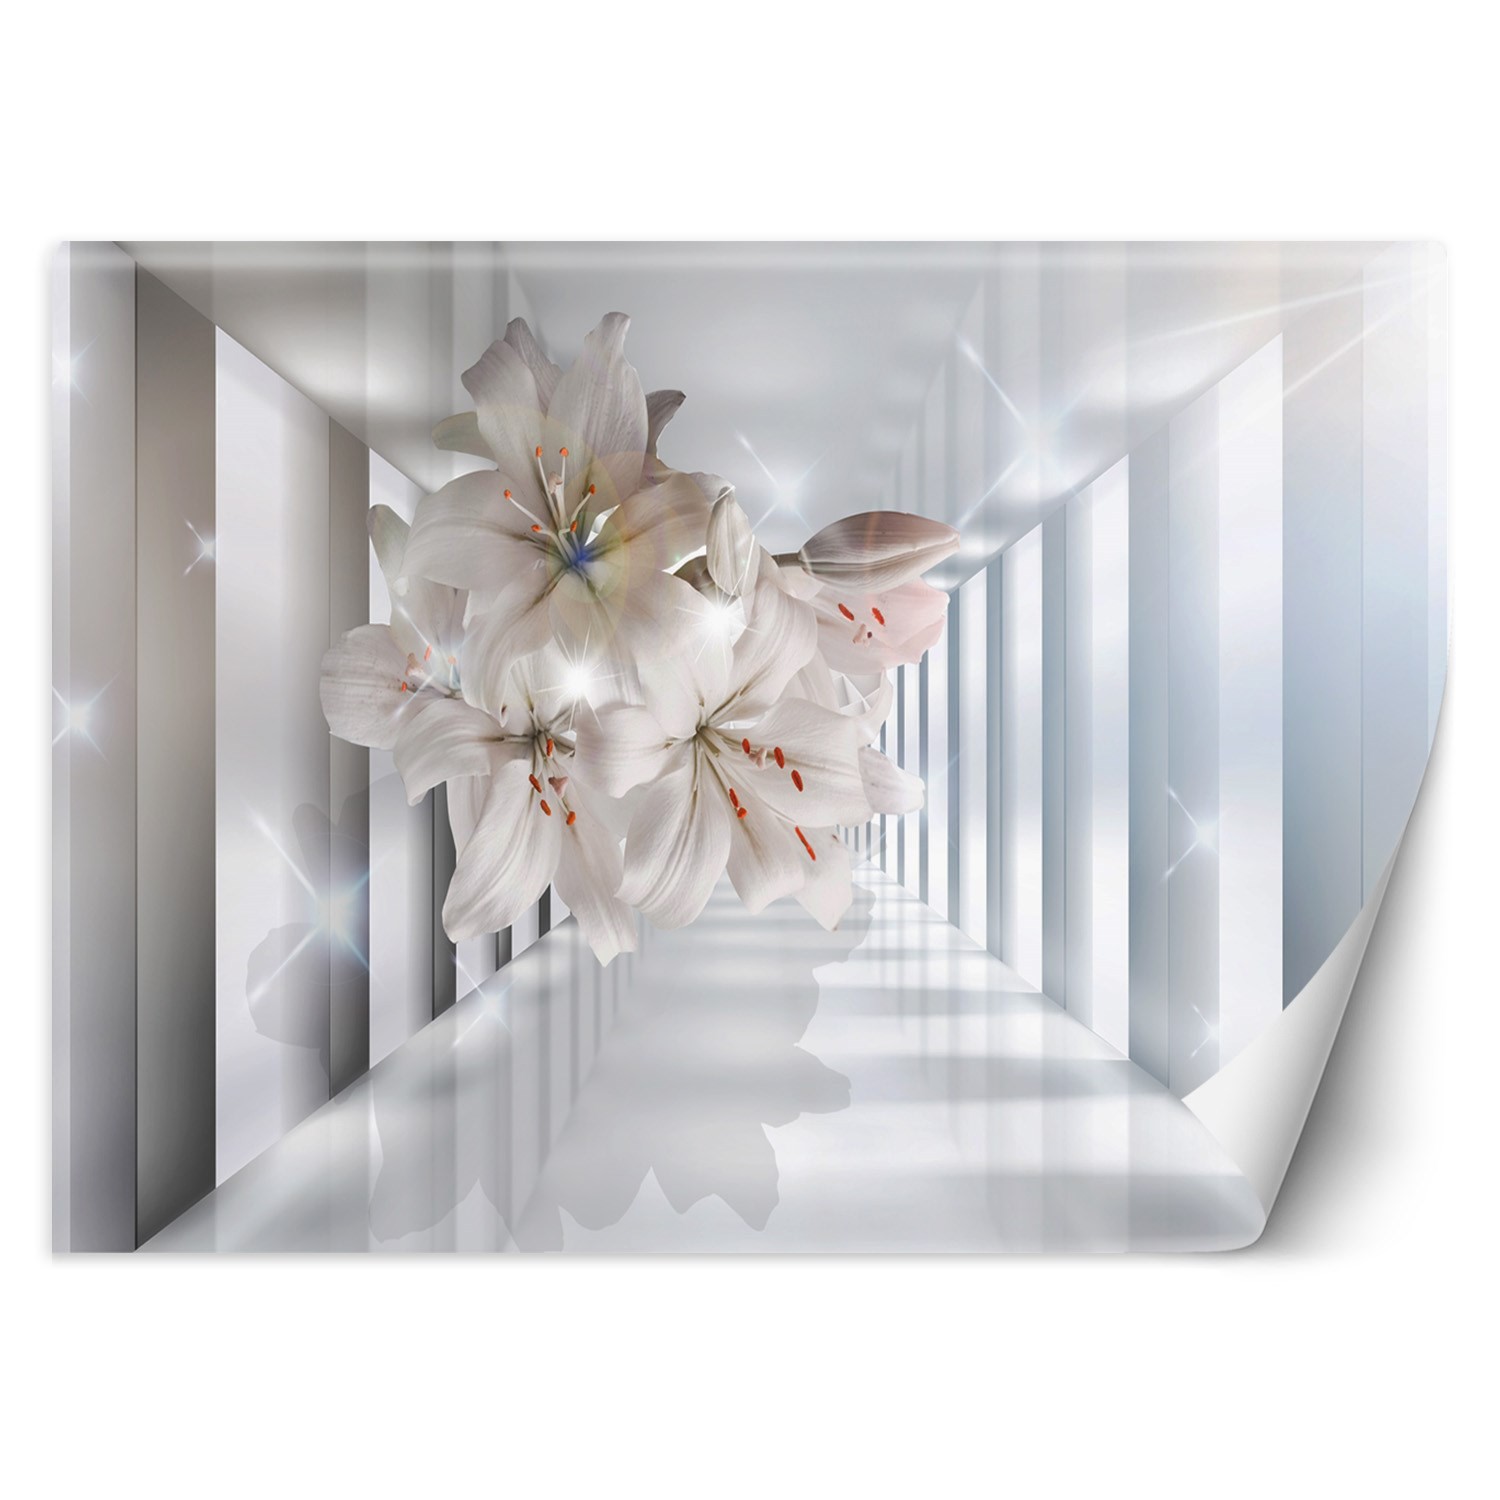 Trend24 – Behang – Bloemen In De Corridor 3D – Vliesbehang – Fotobehang 3D – Behang Woonkamer – 400x280x2 cm – Incl. behanglijm